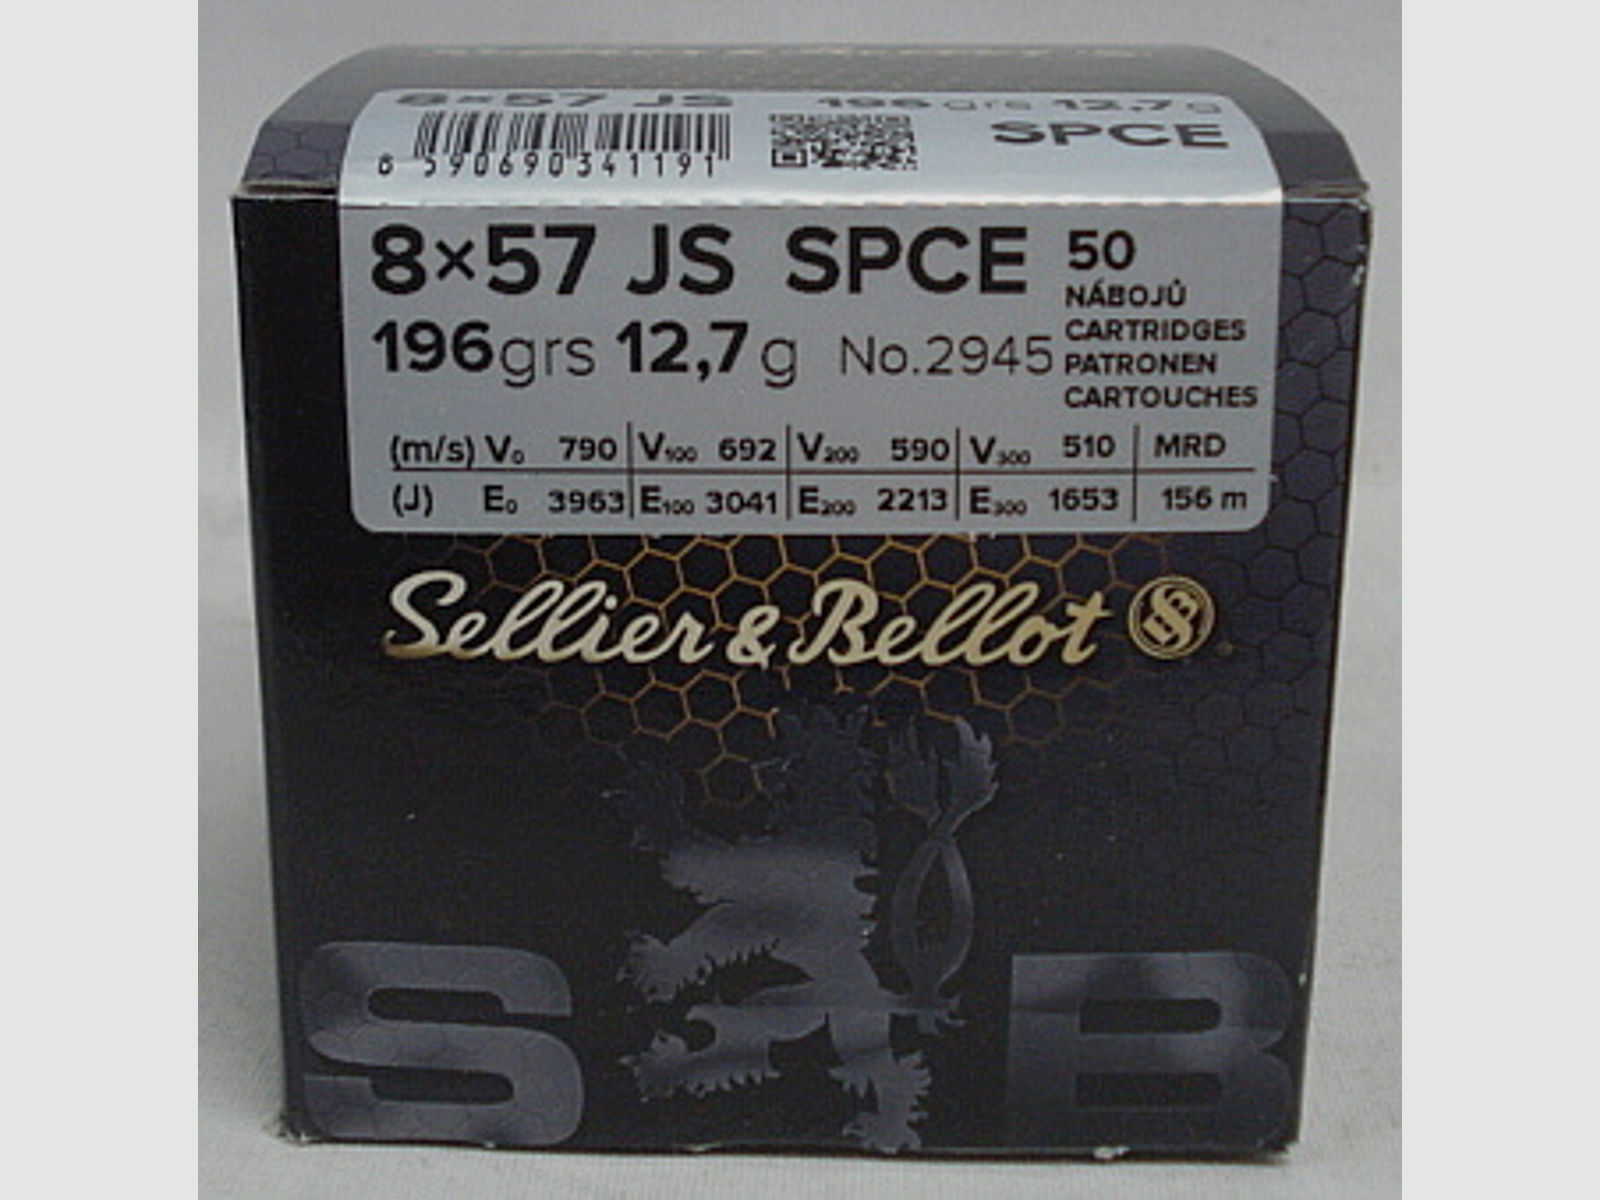 8x57IS SPCE-Target - 12,7g/196gr (a50)